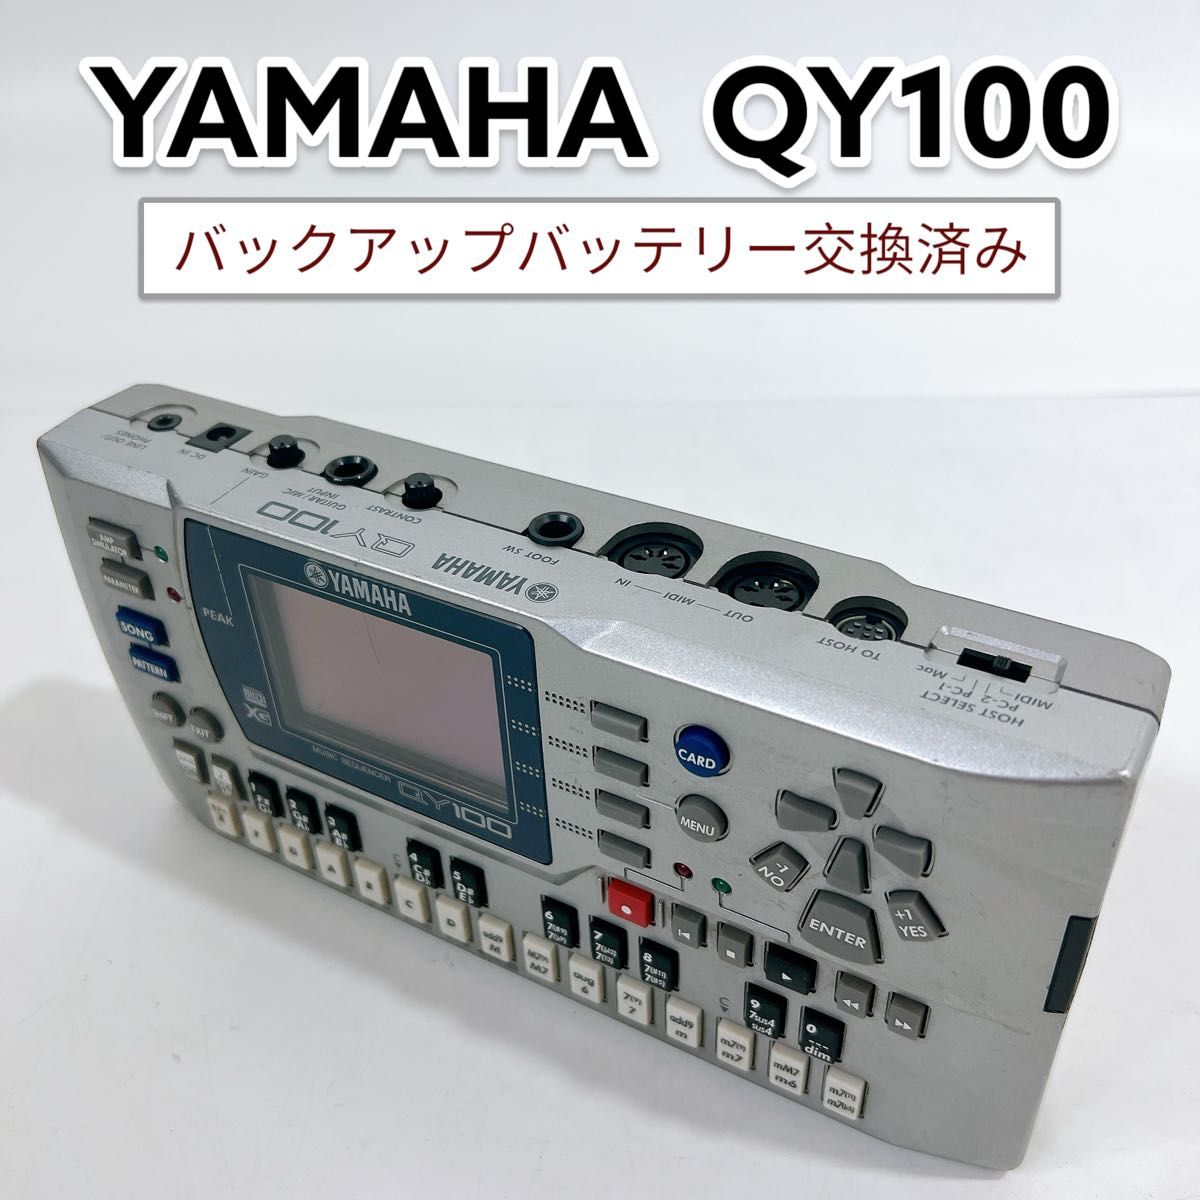 YAMAHA シーケンサー QY100 ヤマハ - DTM/DAW